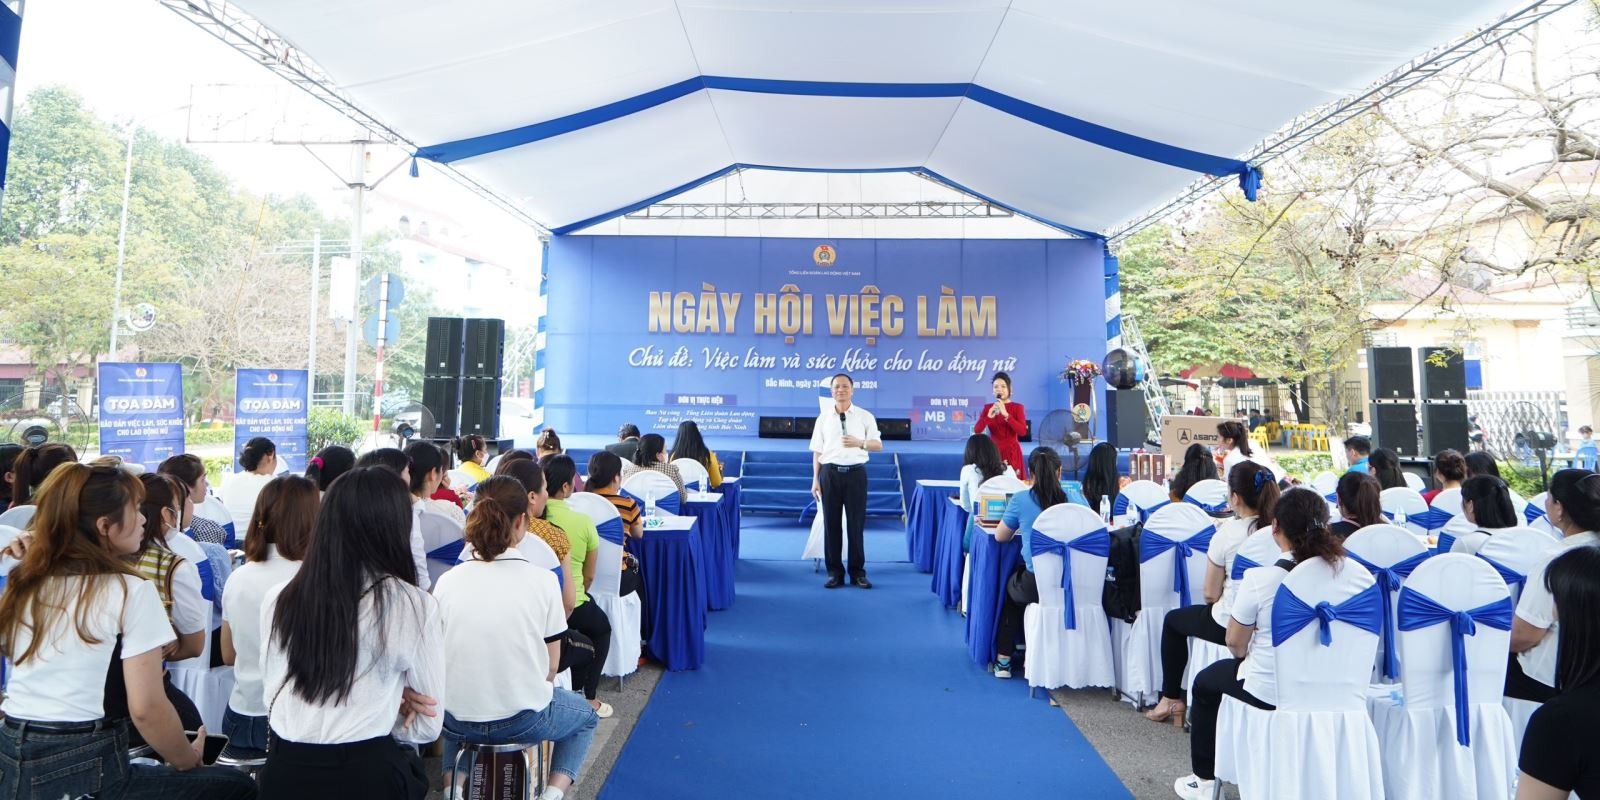 Tư vấn chăm sóc sức khoẻ, sức khoẻ sinh sản cho lao động nữ tại Ngày hội việc làm cho lao động nữ tại Quế Võ, Bắc Ninh. Ảnh: HL